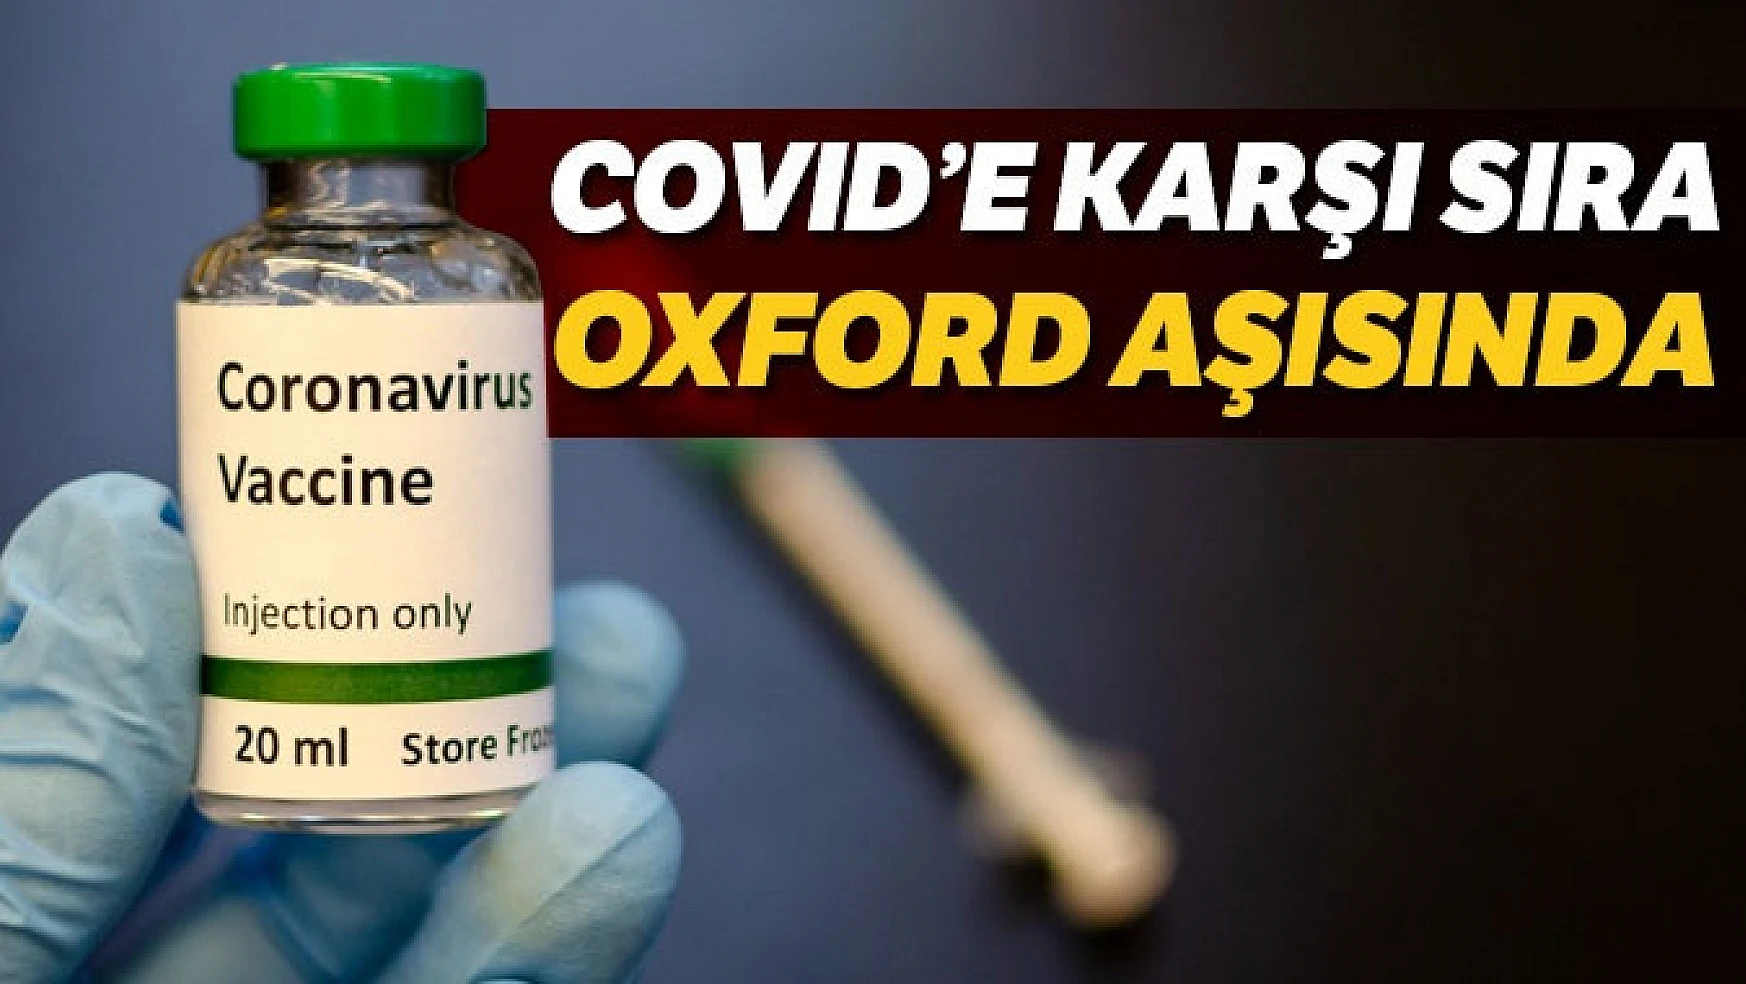 Covid'e karşı sıra Oxford aşısında